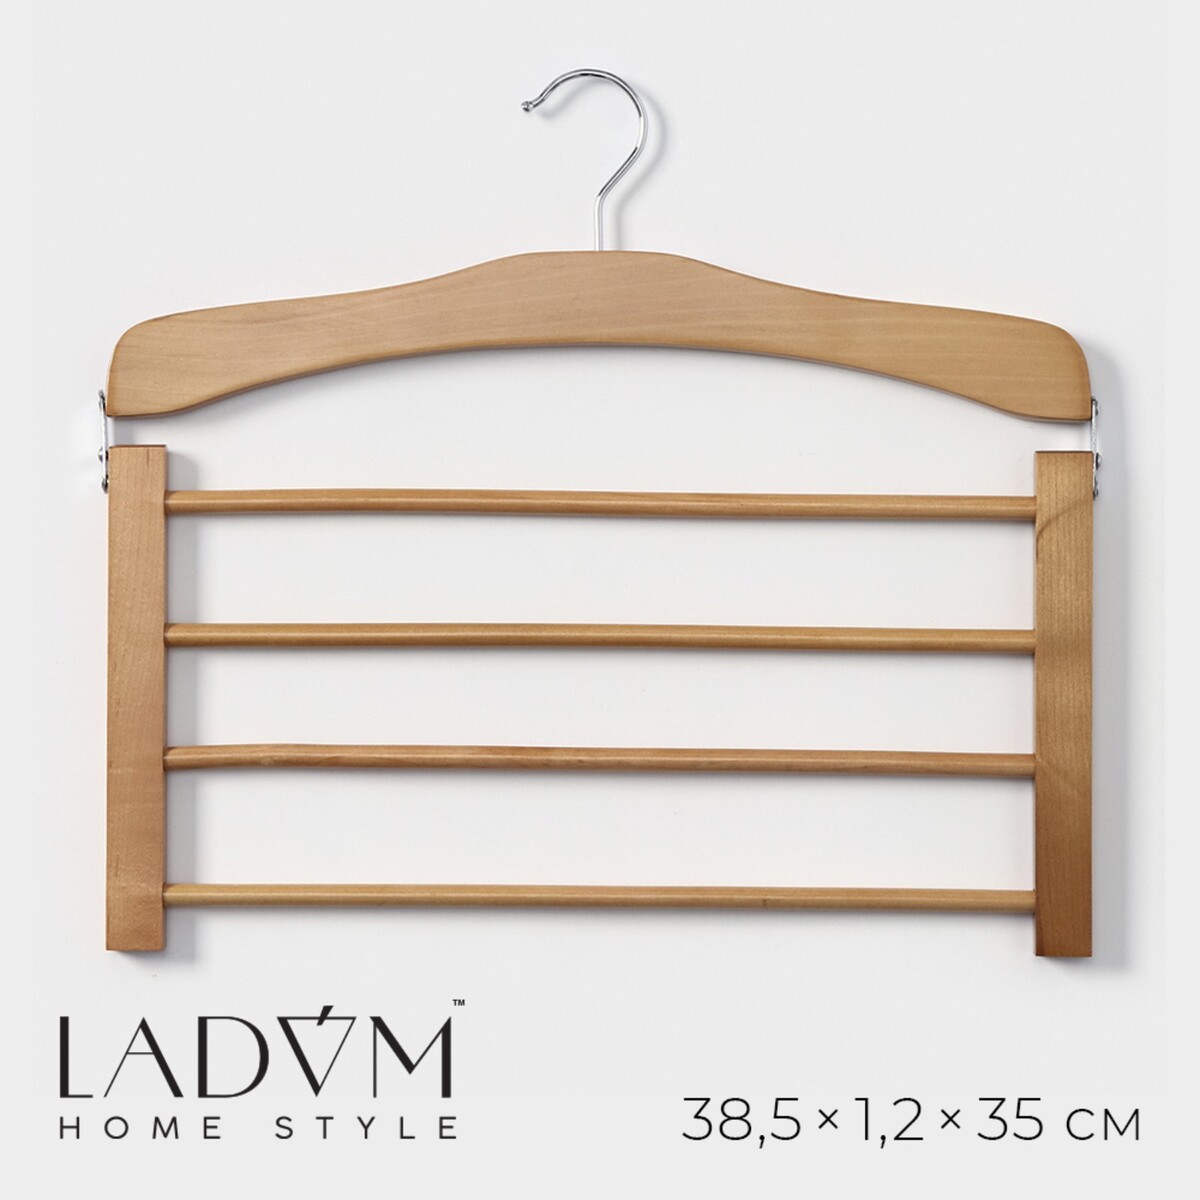 Плечики - вешалки для одежды деревянные многоуровневые ladо́m bois, 38,5×1,2×34,3 см, сорт а, цвет светлое дерево плечики вешалки для одежды ladо́m